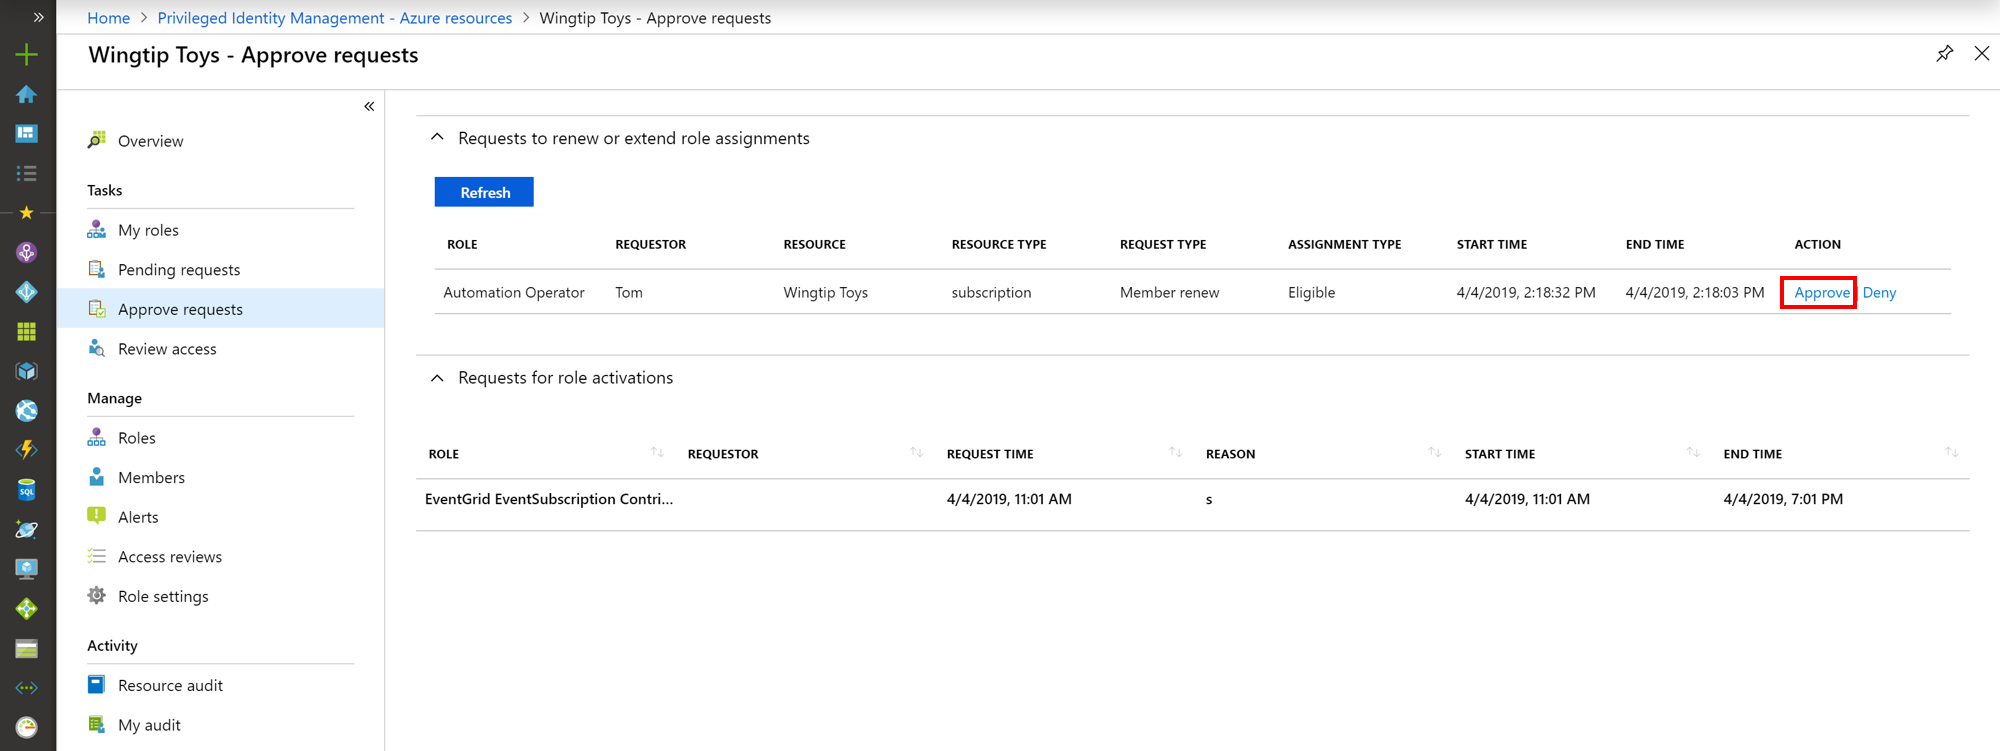 Captura de ecrã dos recursos do Azure - Aprovar pedidos, página listando pedidos e hiperligações para aprovar ou negar.